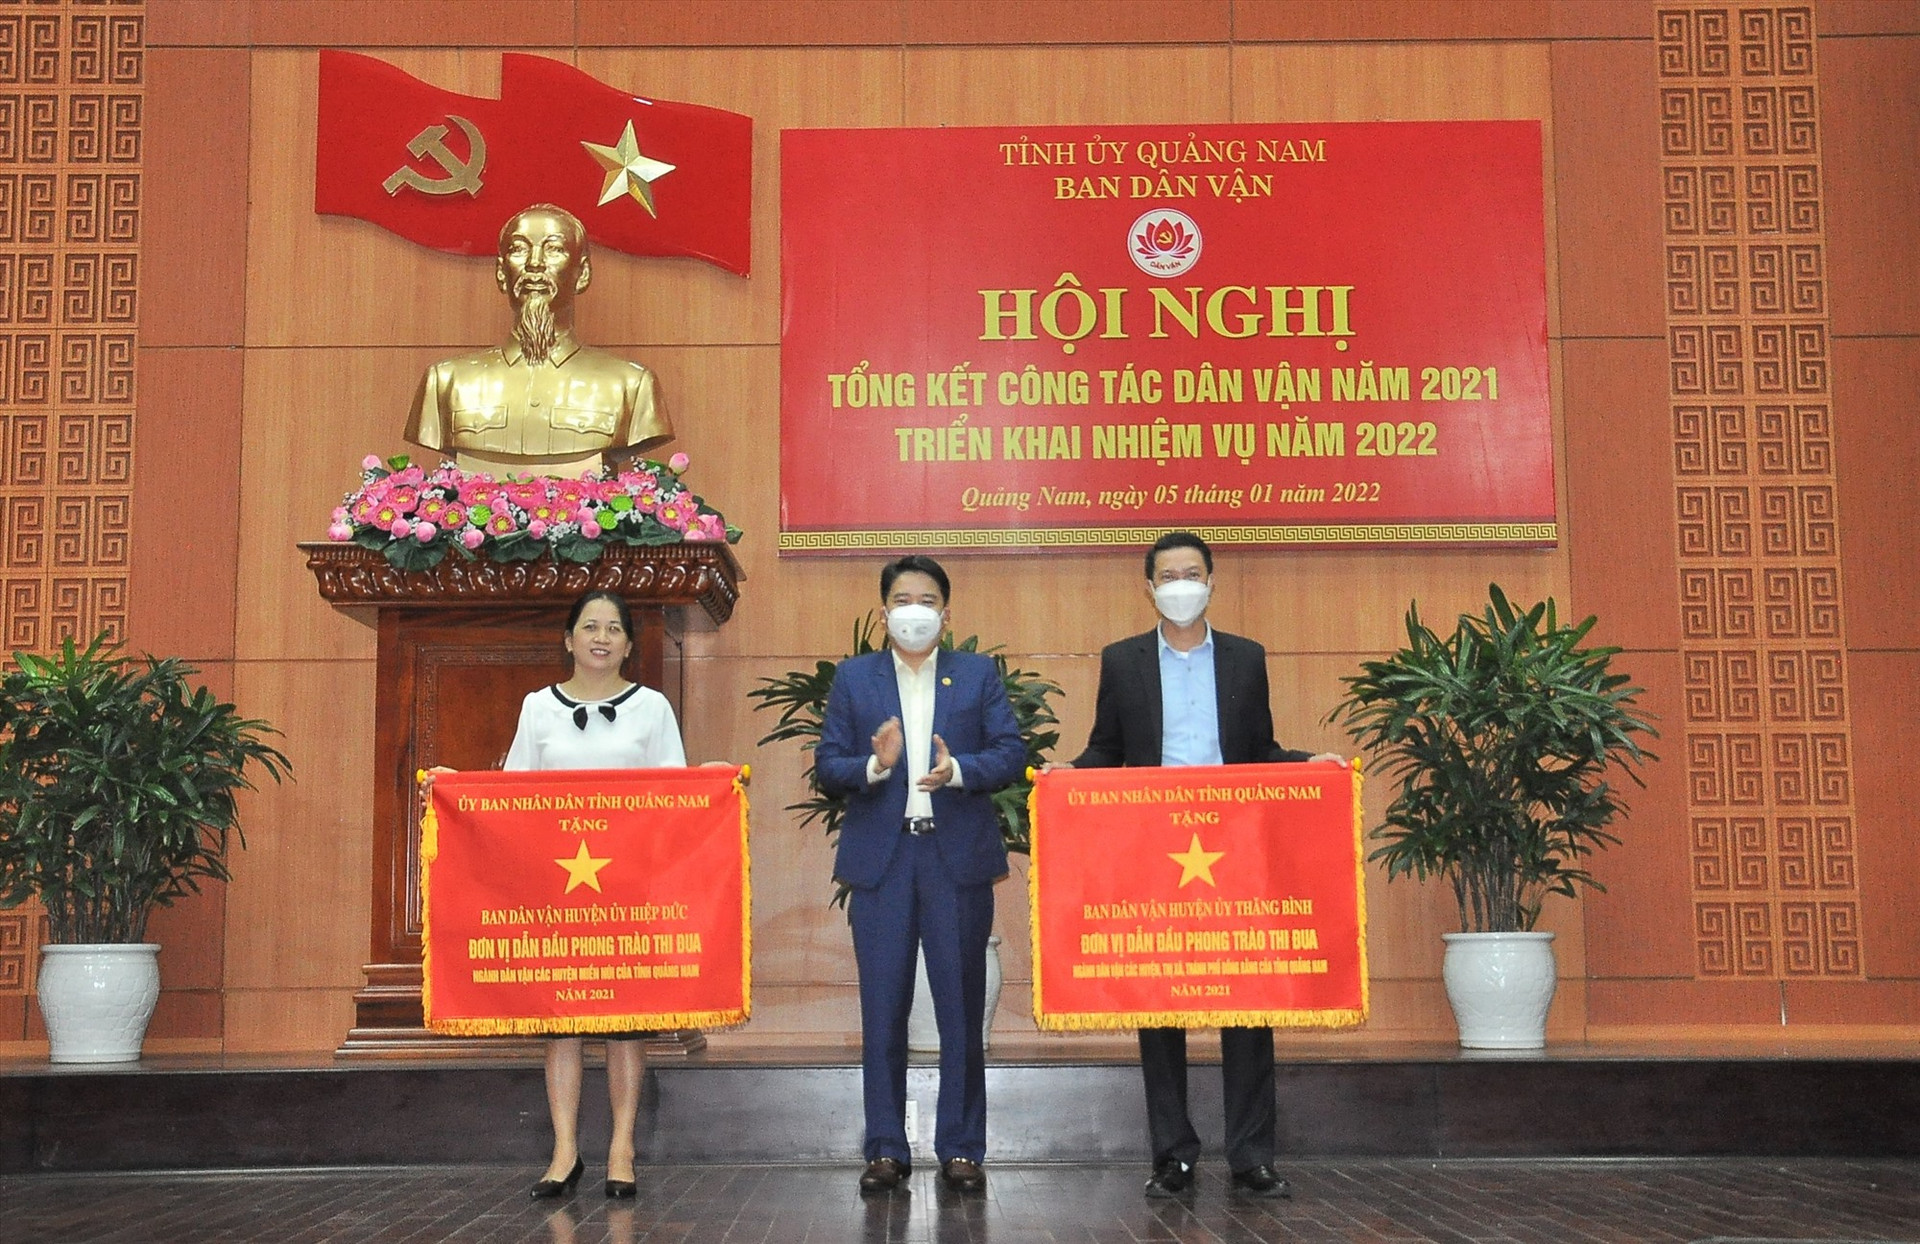 Phó Chủ tịch UBND tỉnh Trần Văn Tân trao cờ thi đua của UBND tỉnh cho Ban Dân vận huyện Hiệp Đức và Thăng Bình vì đã có thành tích xuất sắc dẫn đầu phong trào thi đua năm 2021. Ảnh: VINH ANH